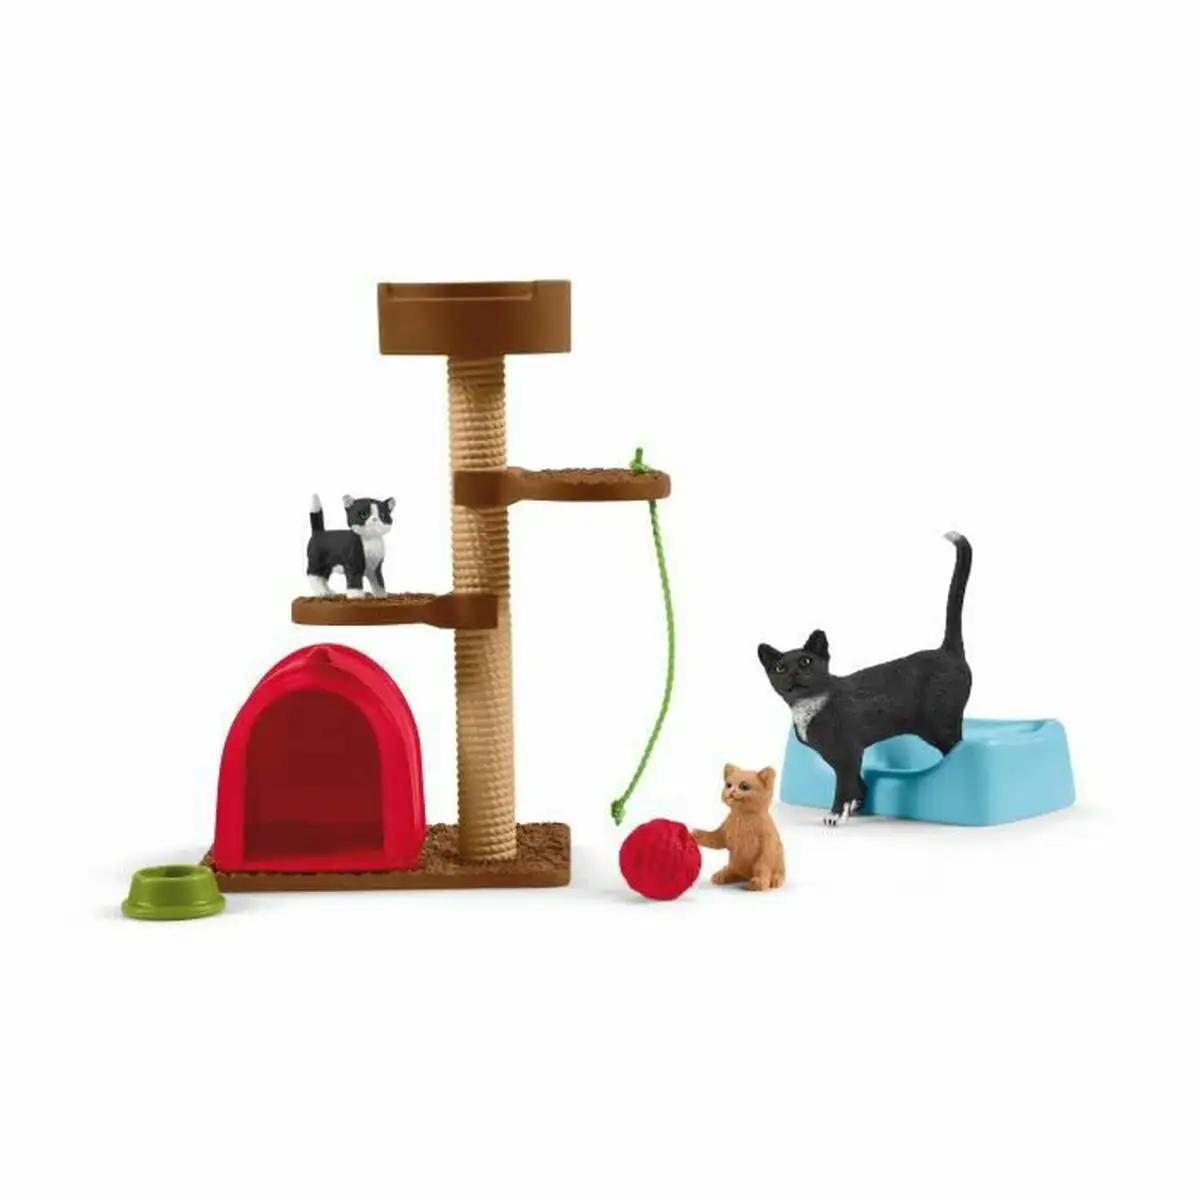 Playset schleich playtime for cute cats chats plastique_8389. DIAYTAR SENEGAL - Votre Destination Shopping Exquise. Explorez notre boutique en ligne et découvrez des trésors qui ajoutent une touche de sophistication à votre style et à votre espace.